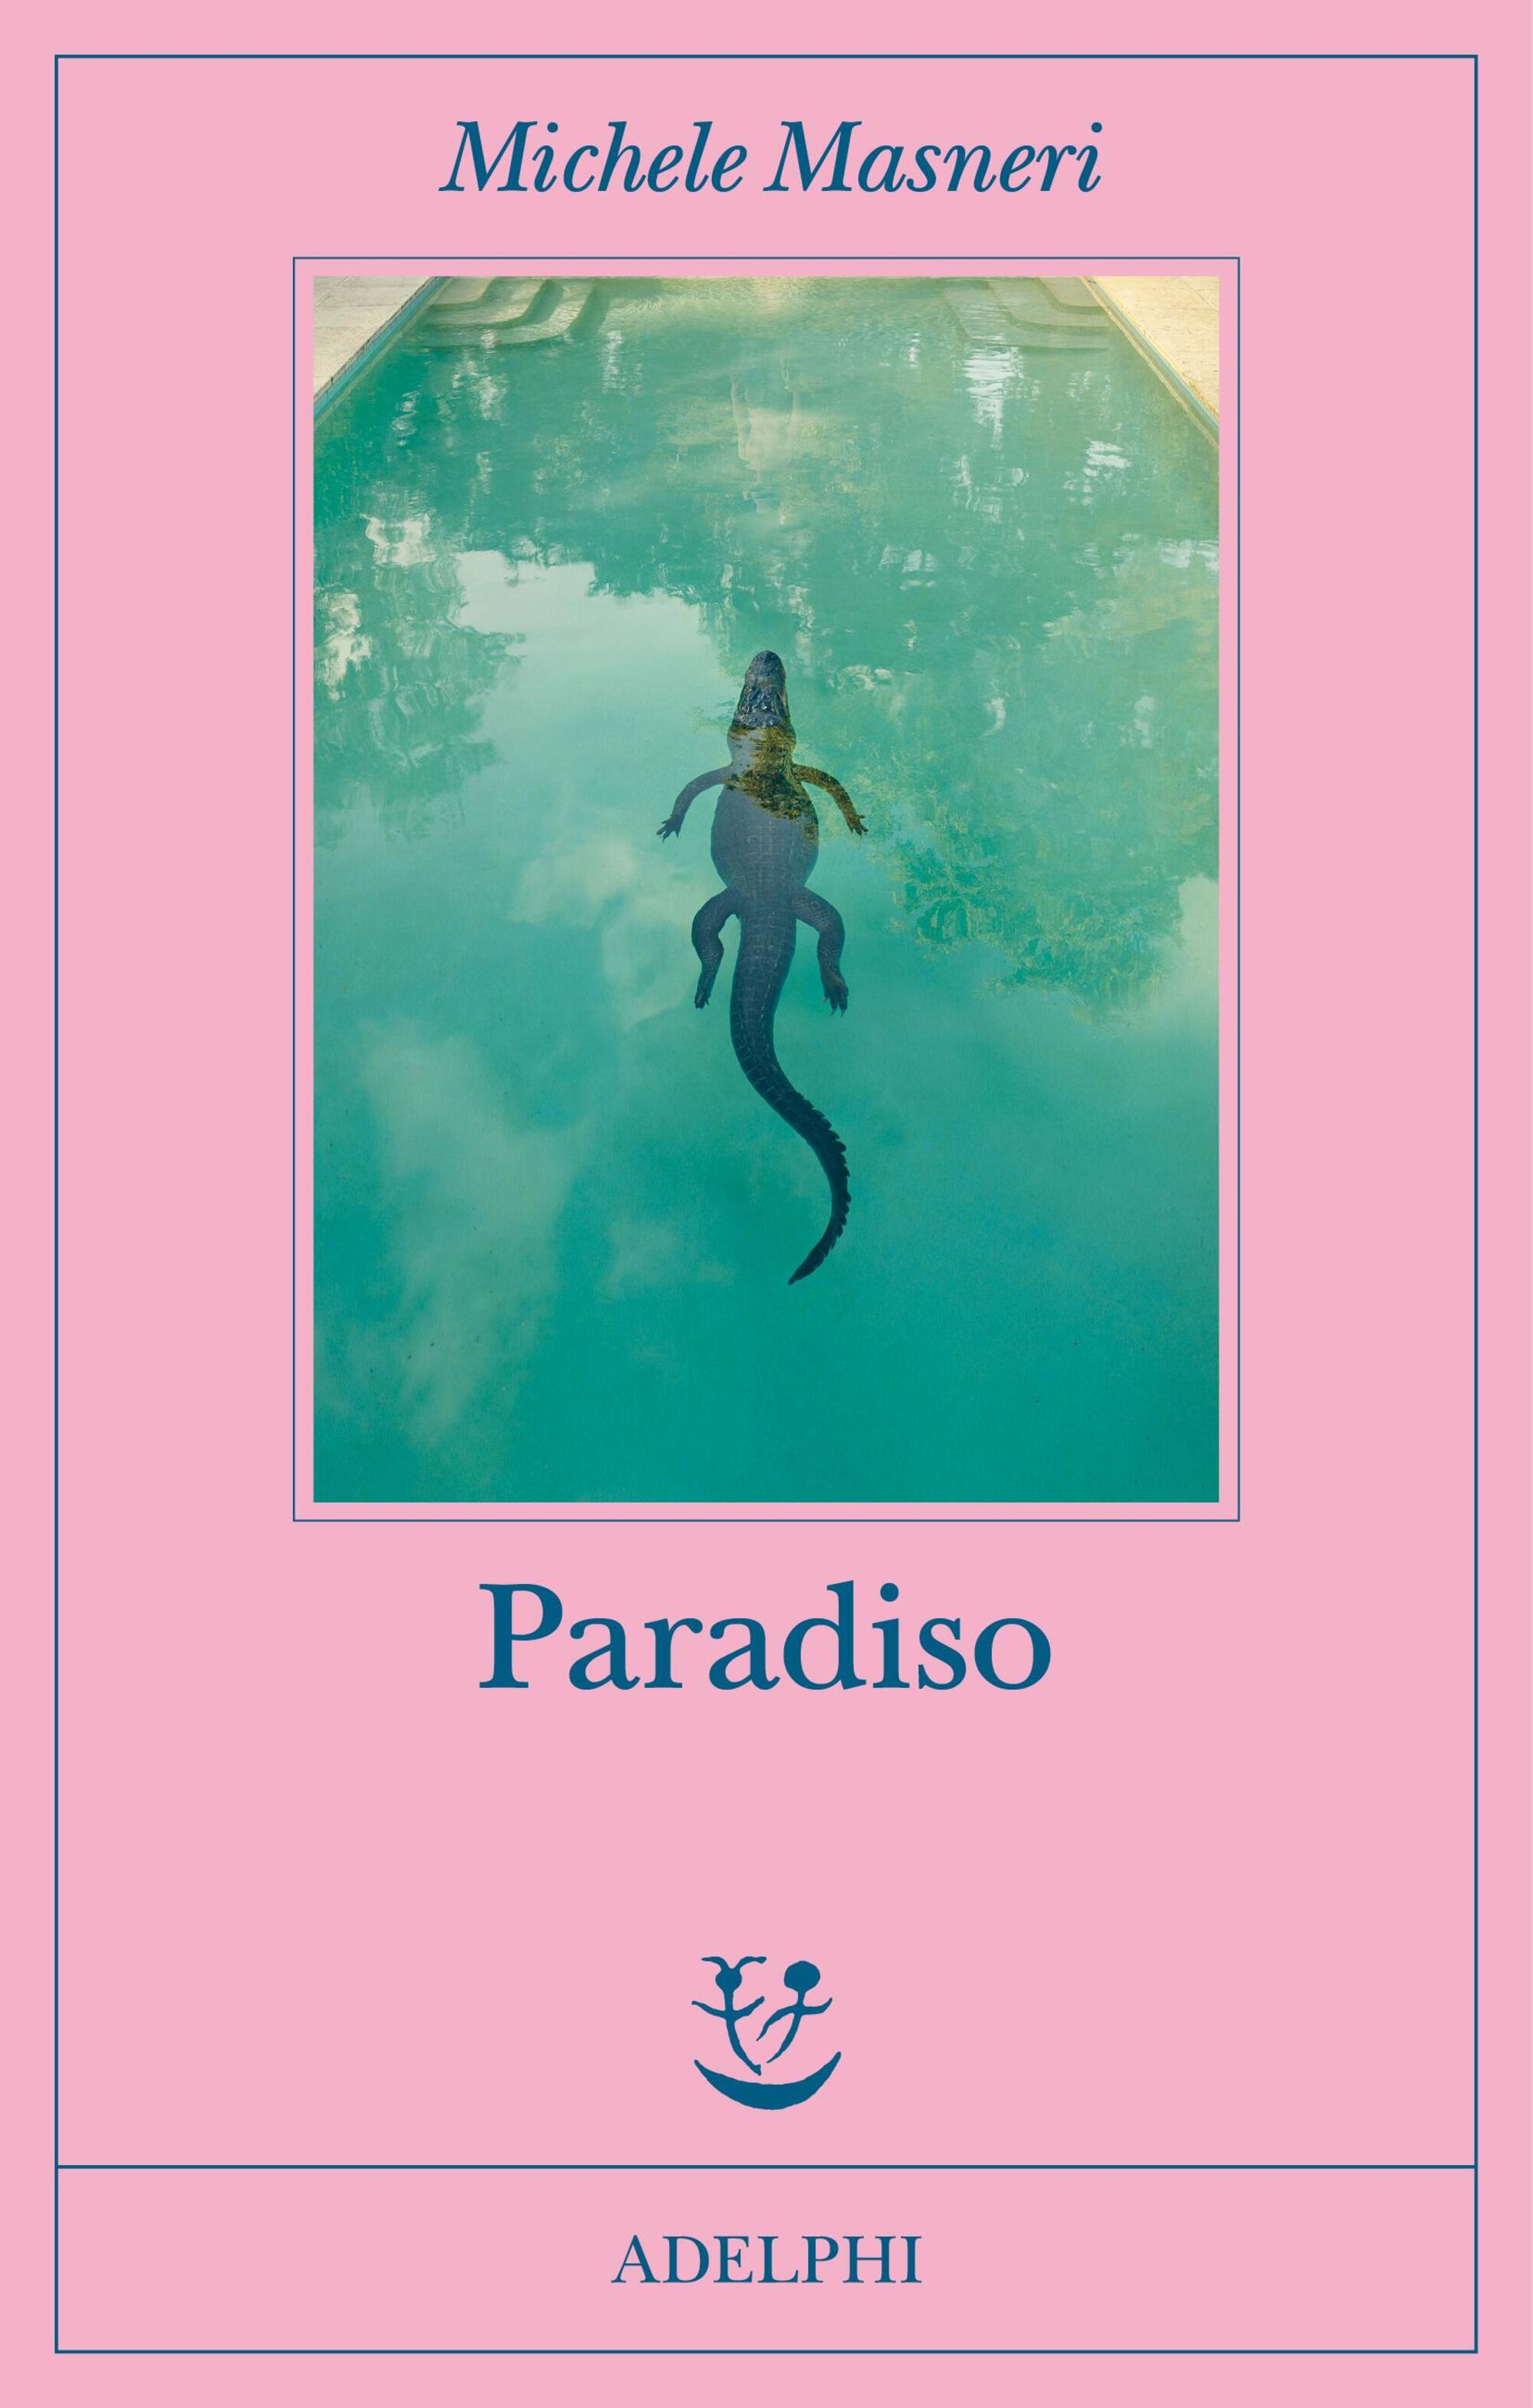 &ldquo;Paradiso&rdquo;, il nuovo libro di Michele Masneri pubblicato con Adelphi